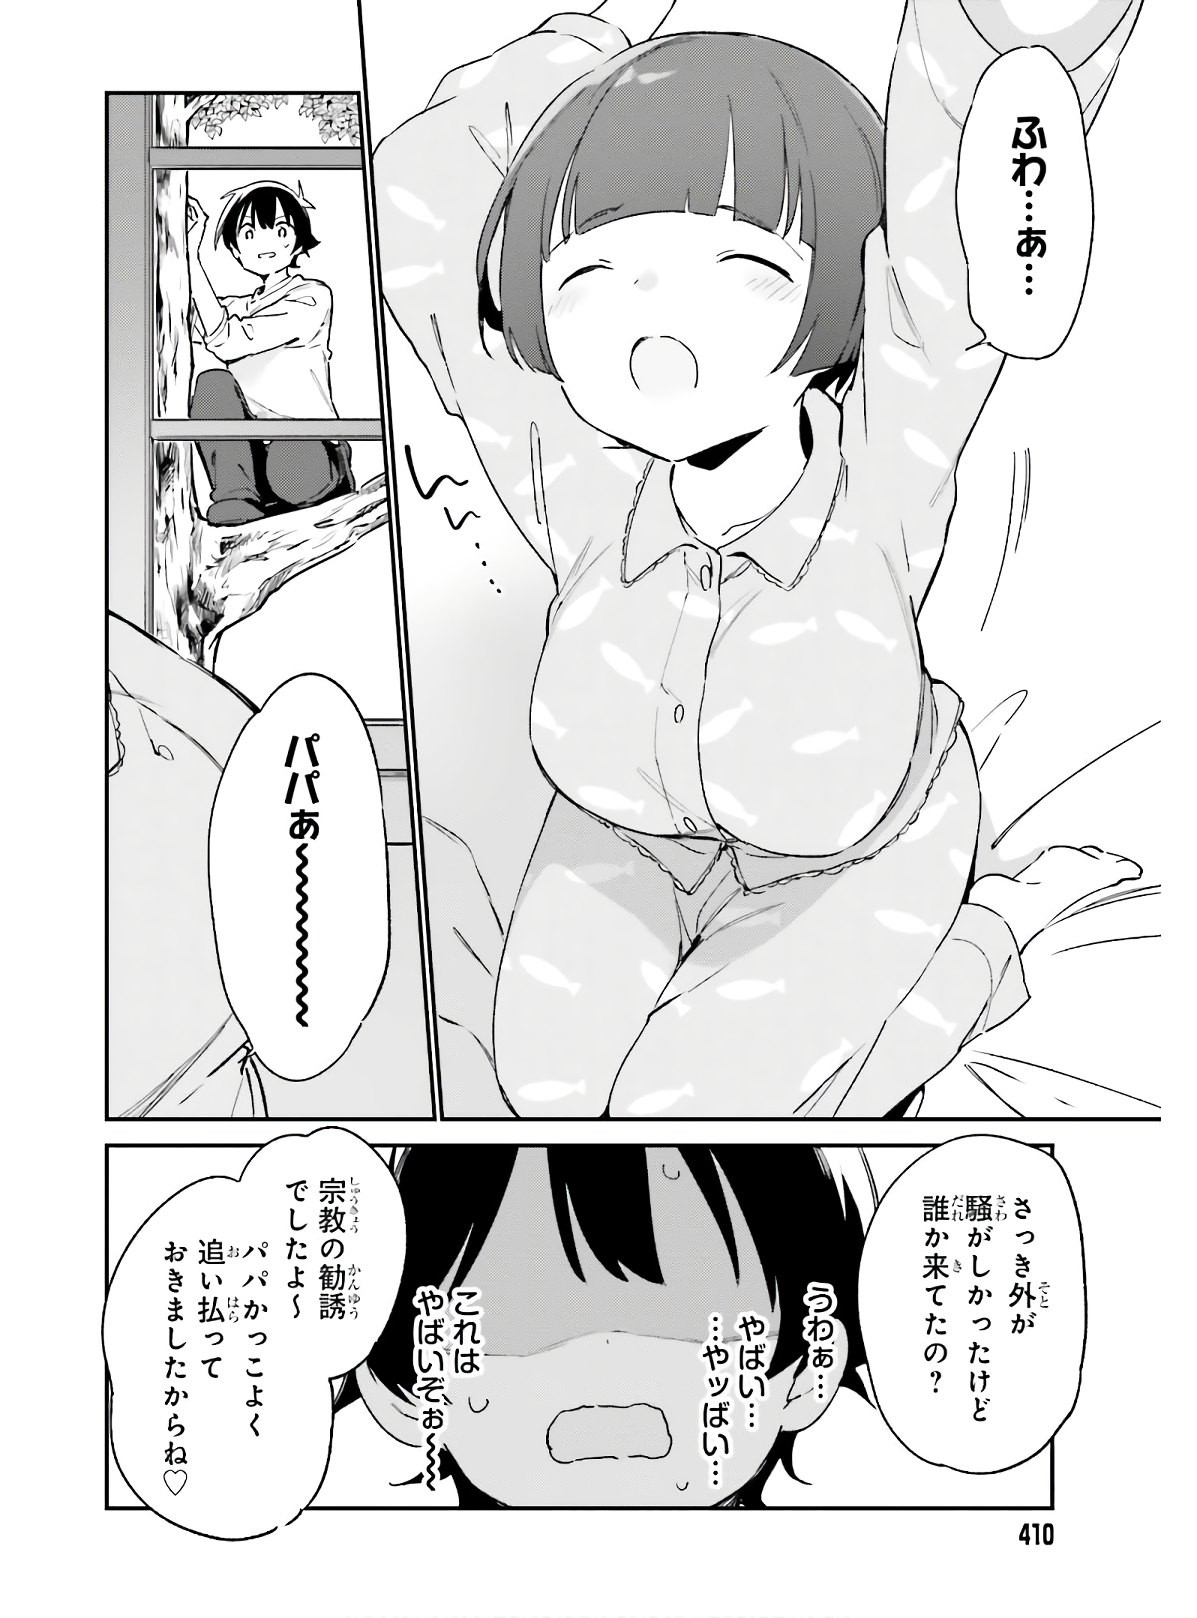 Ero Manga Sensei - Chapter 68 - Page 18